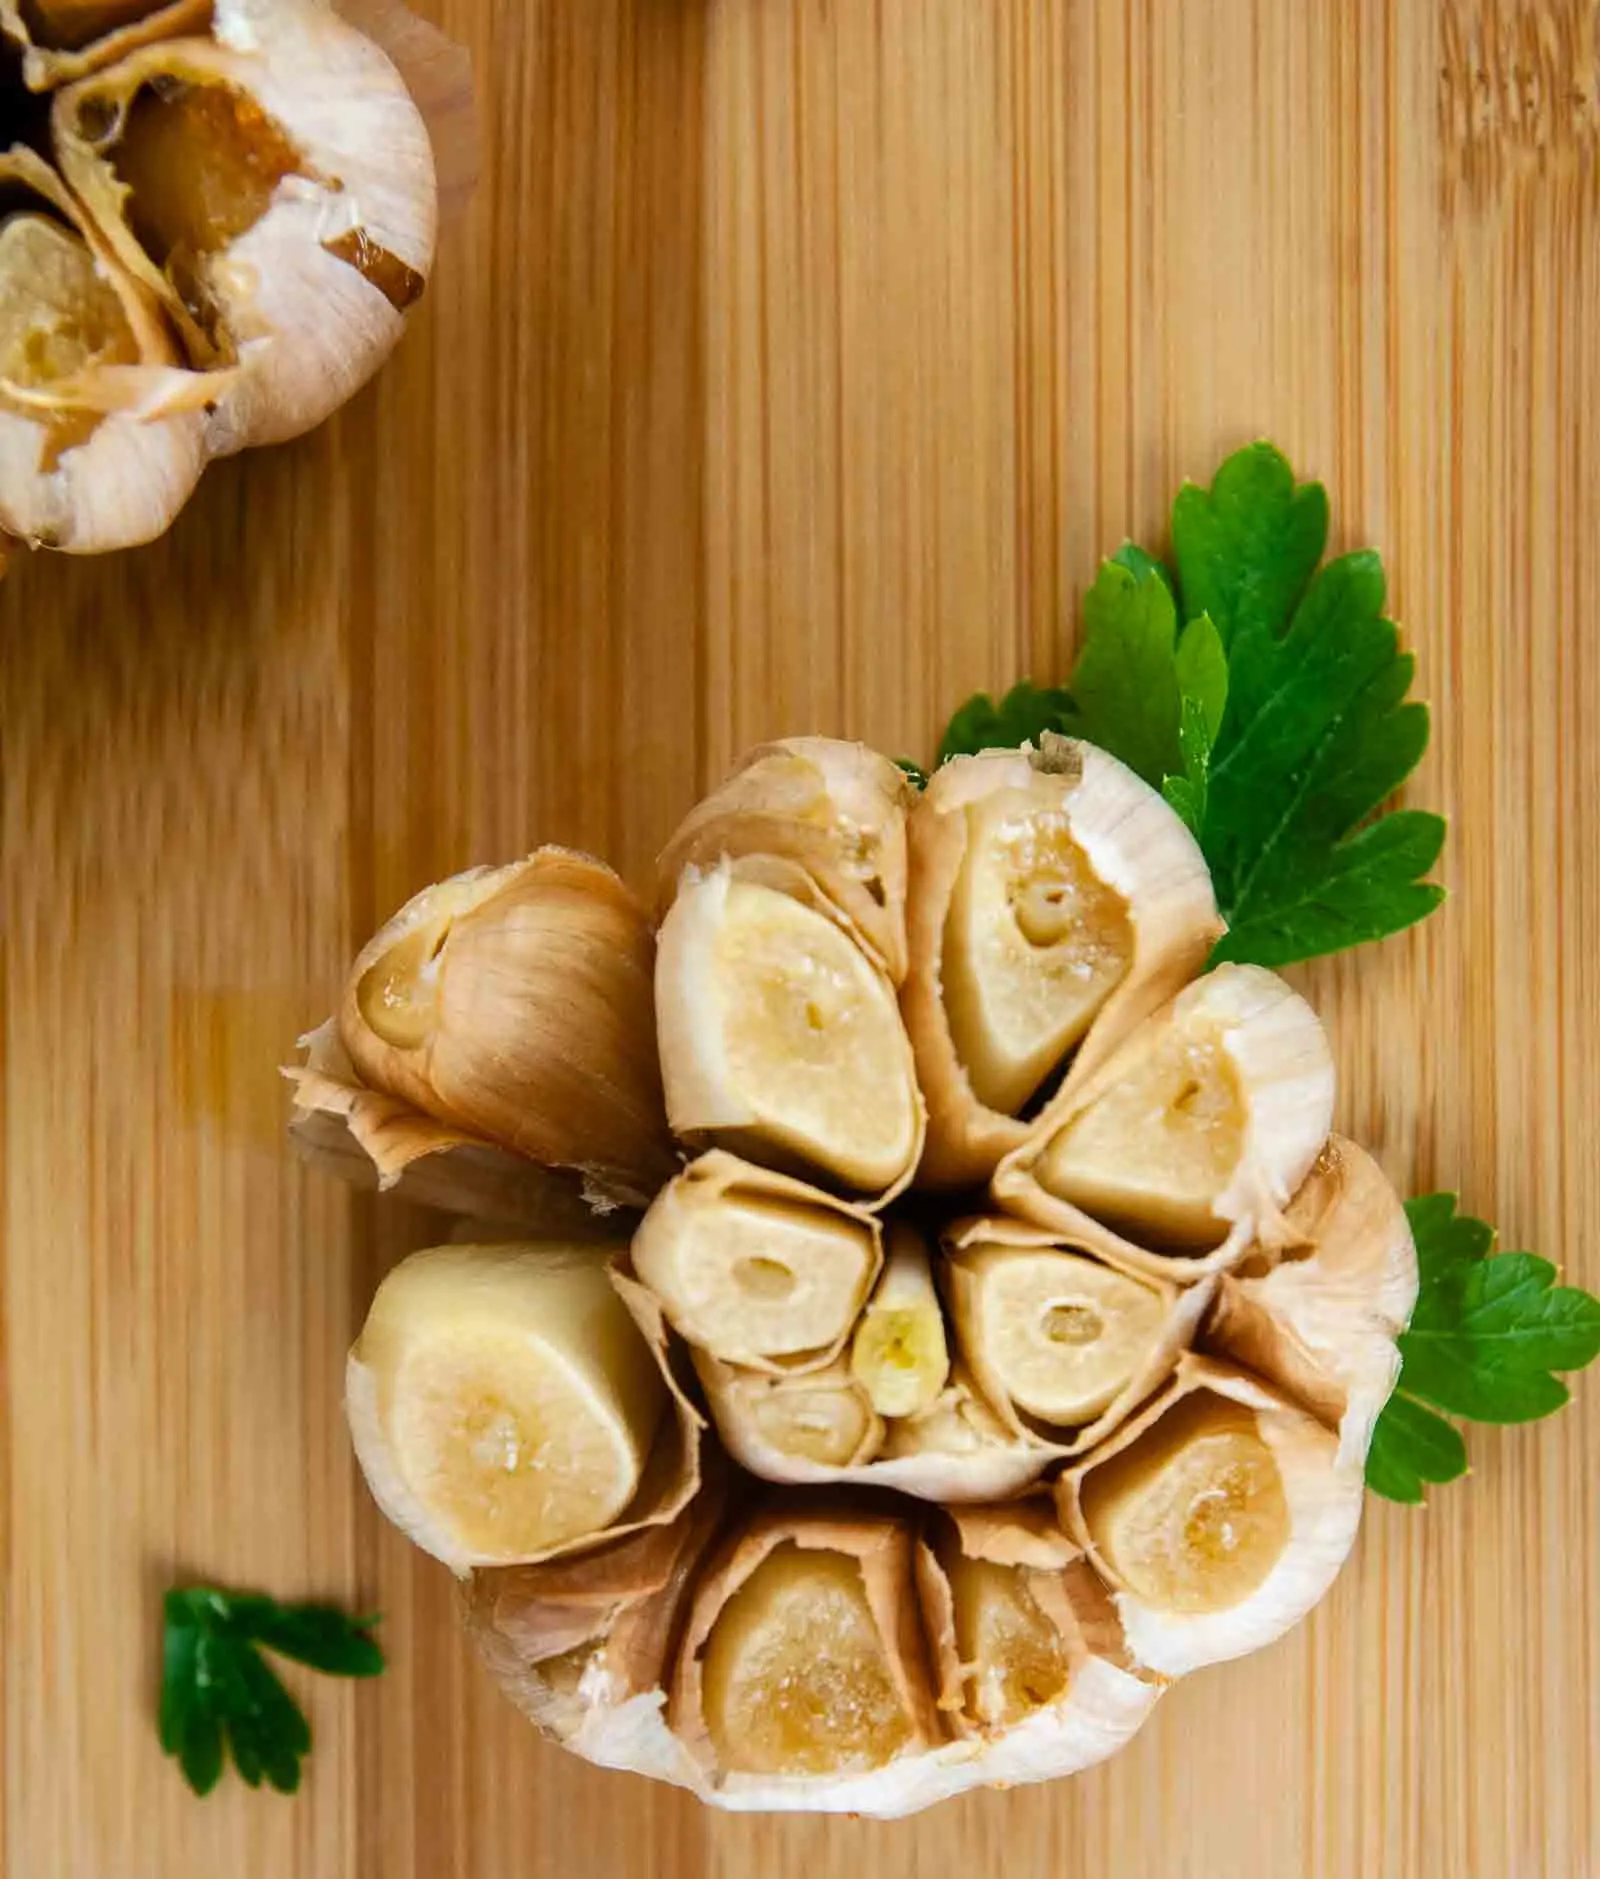 Roasted Garlic on a cutting board